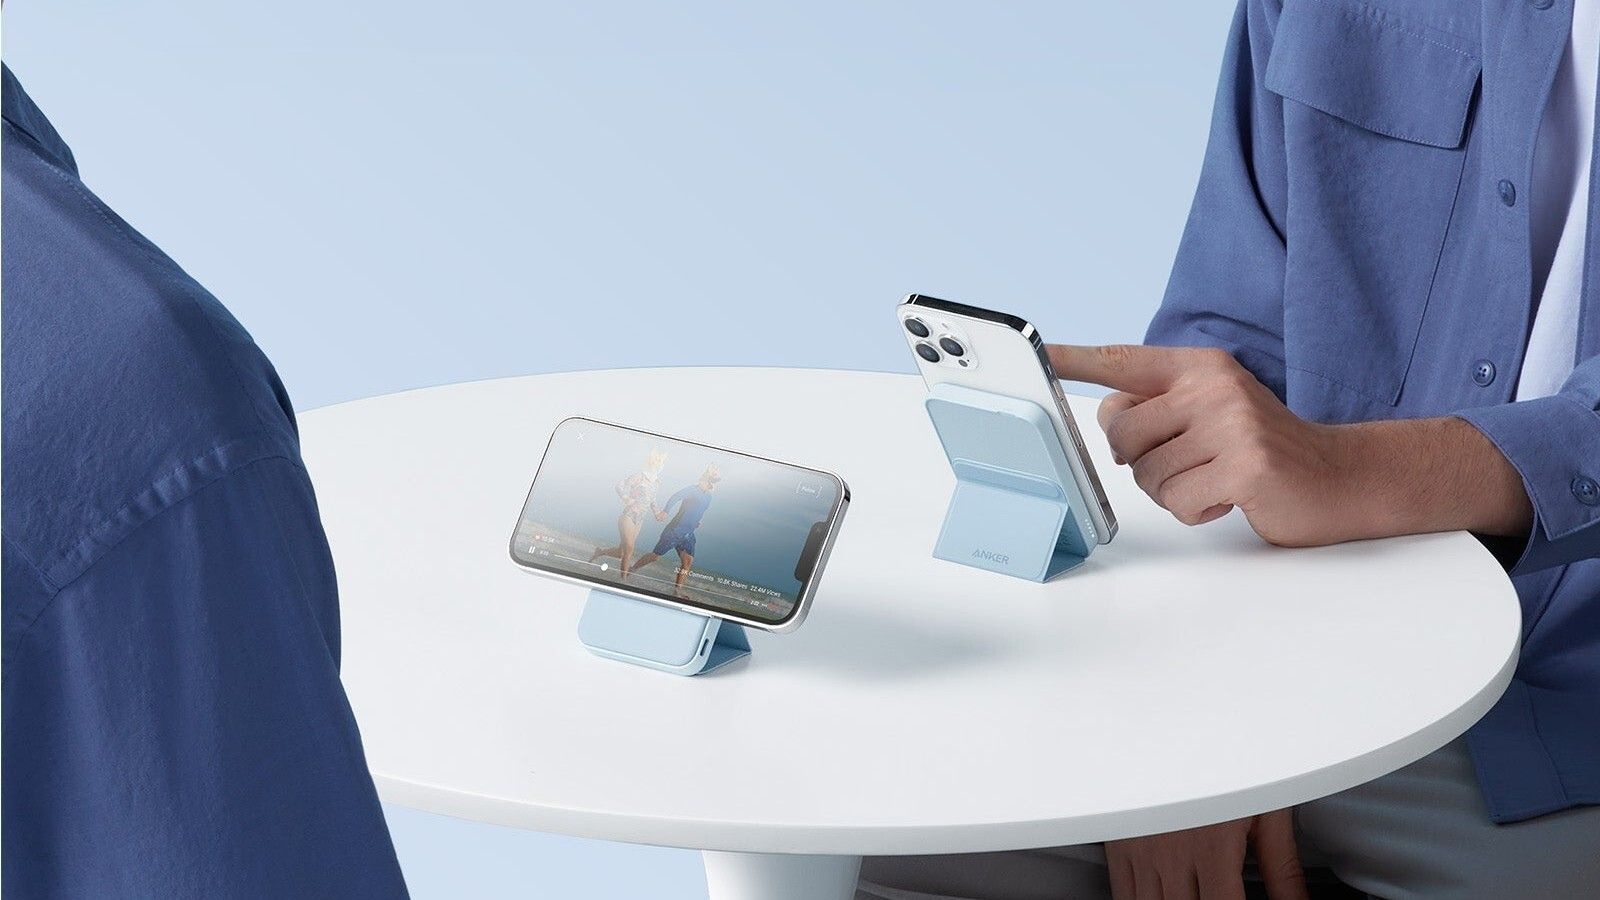 Imagem mostrando dois iPhones usando bancos de energia Anker 622 em uma mesa branca